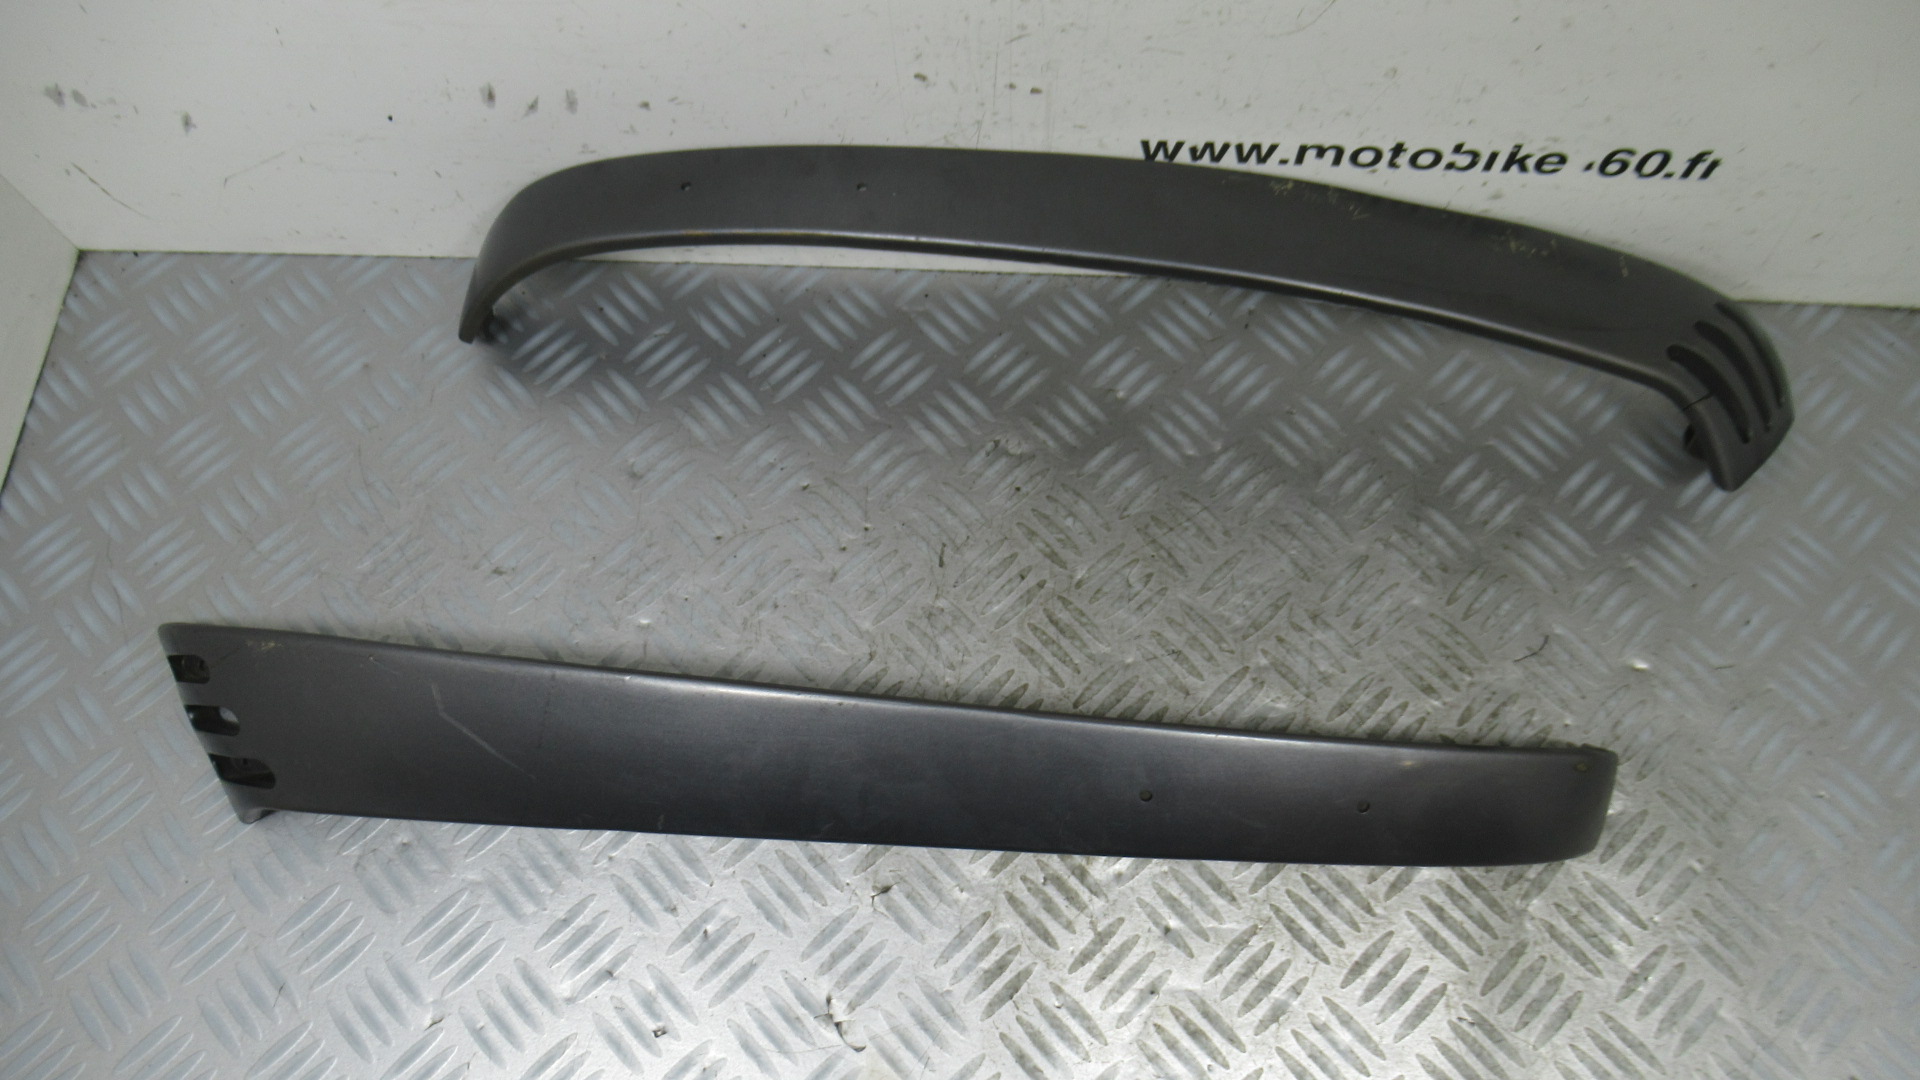 Baguette laterale gauche et droite Vespa LX 50 2t (622127) (622128) (gris)